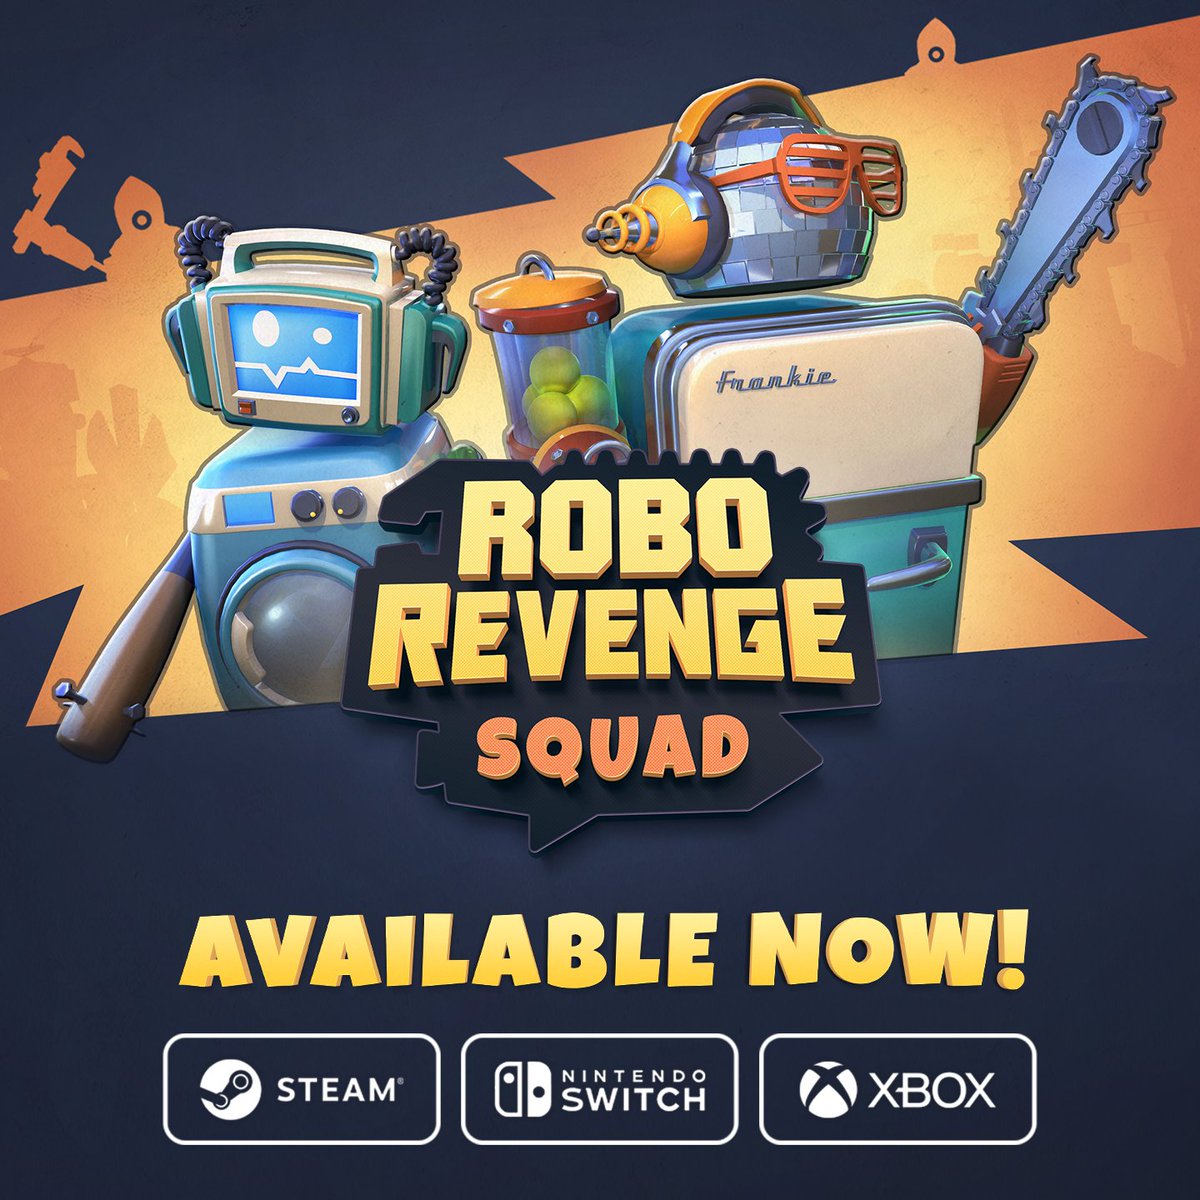 Comprar o Robo Revenge Squad